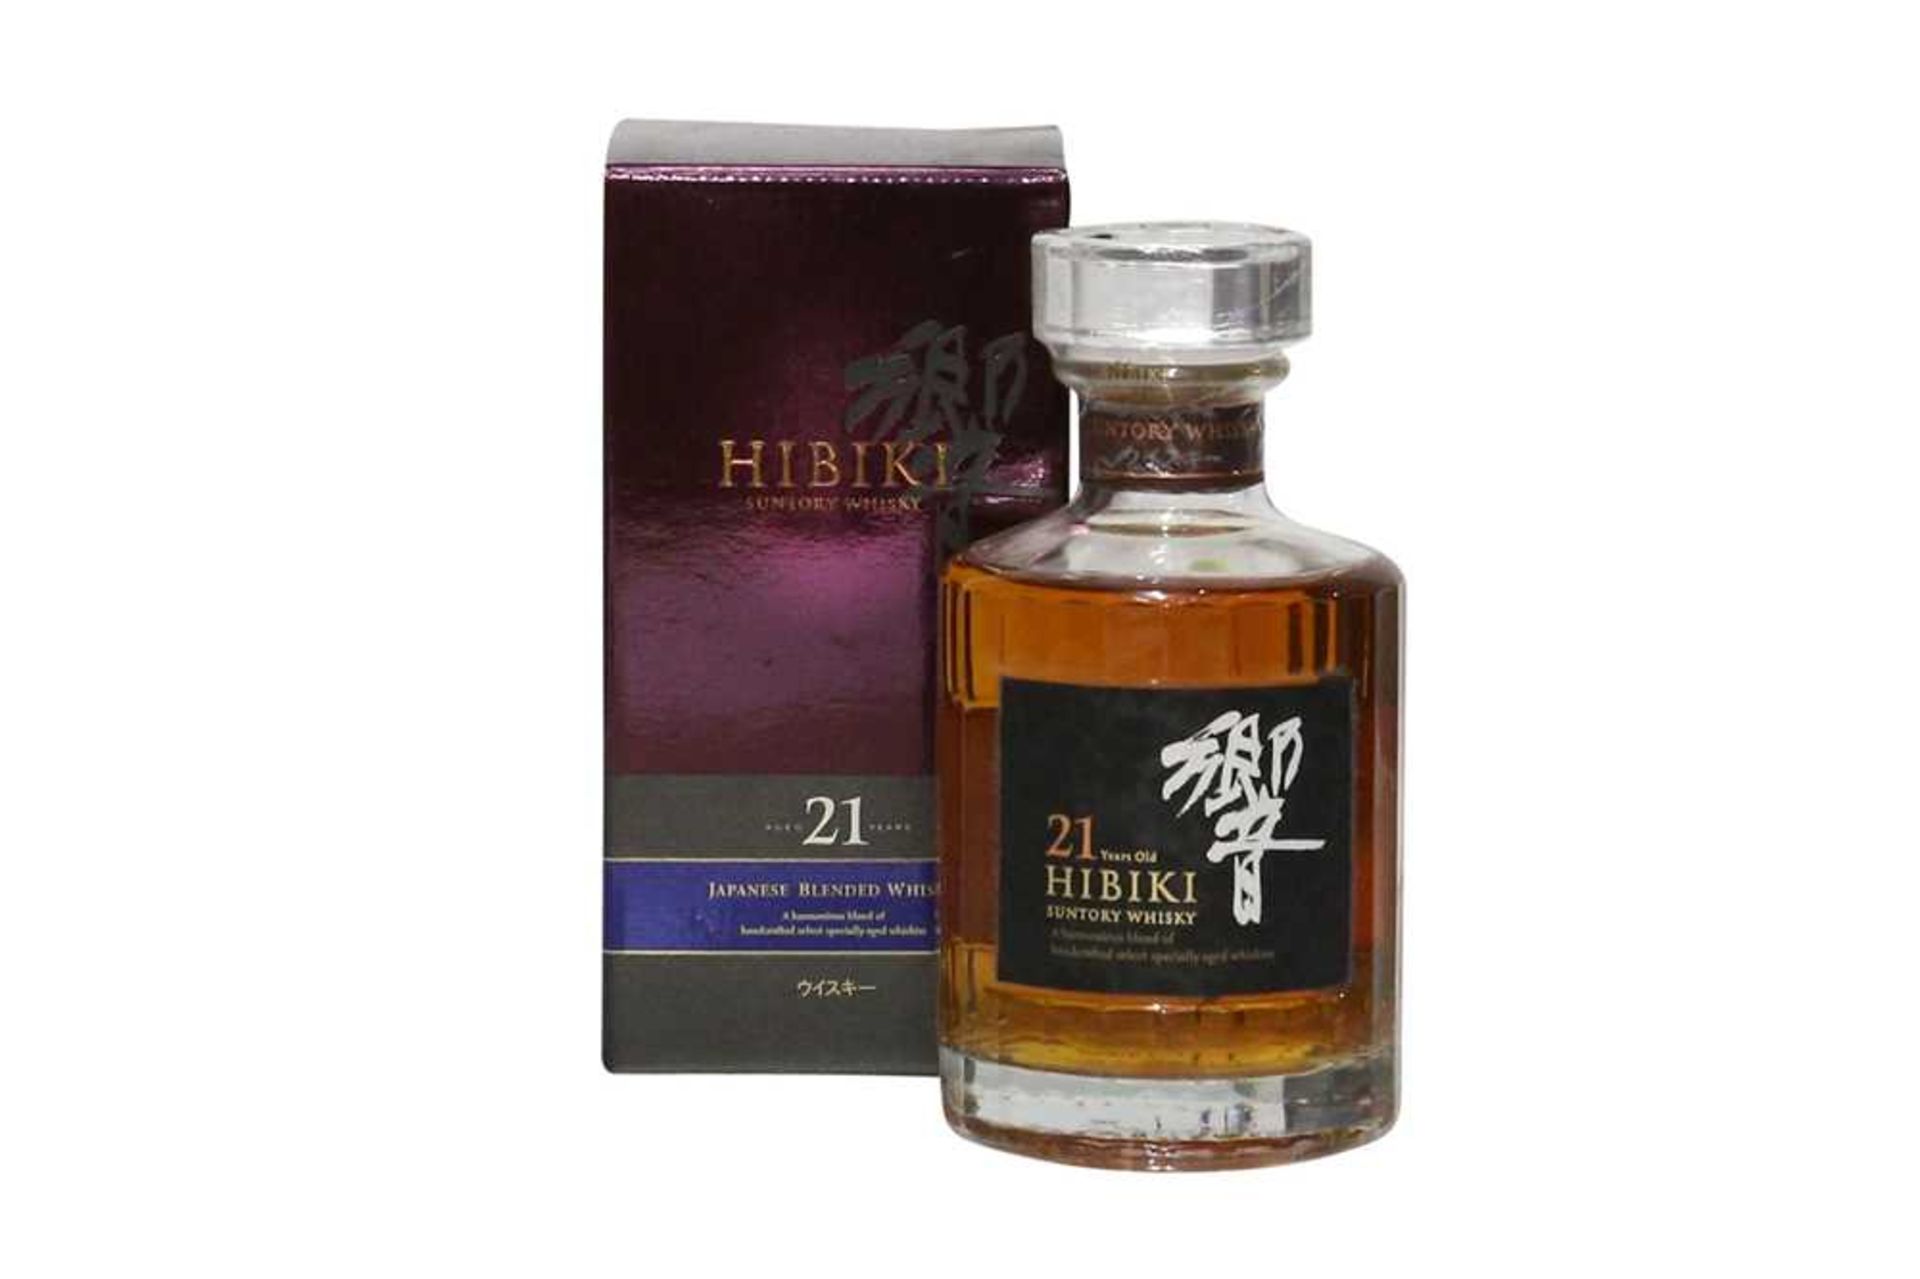 Hibiki, Suntory, Japanese Blended Whisky, Aged 21 years, old bottling